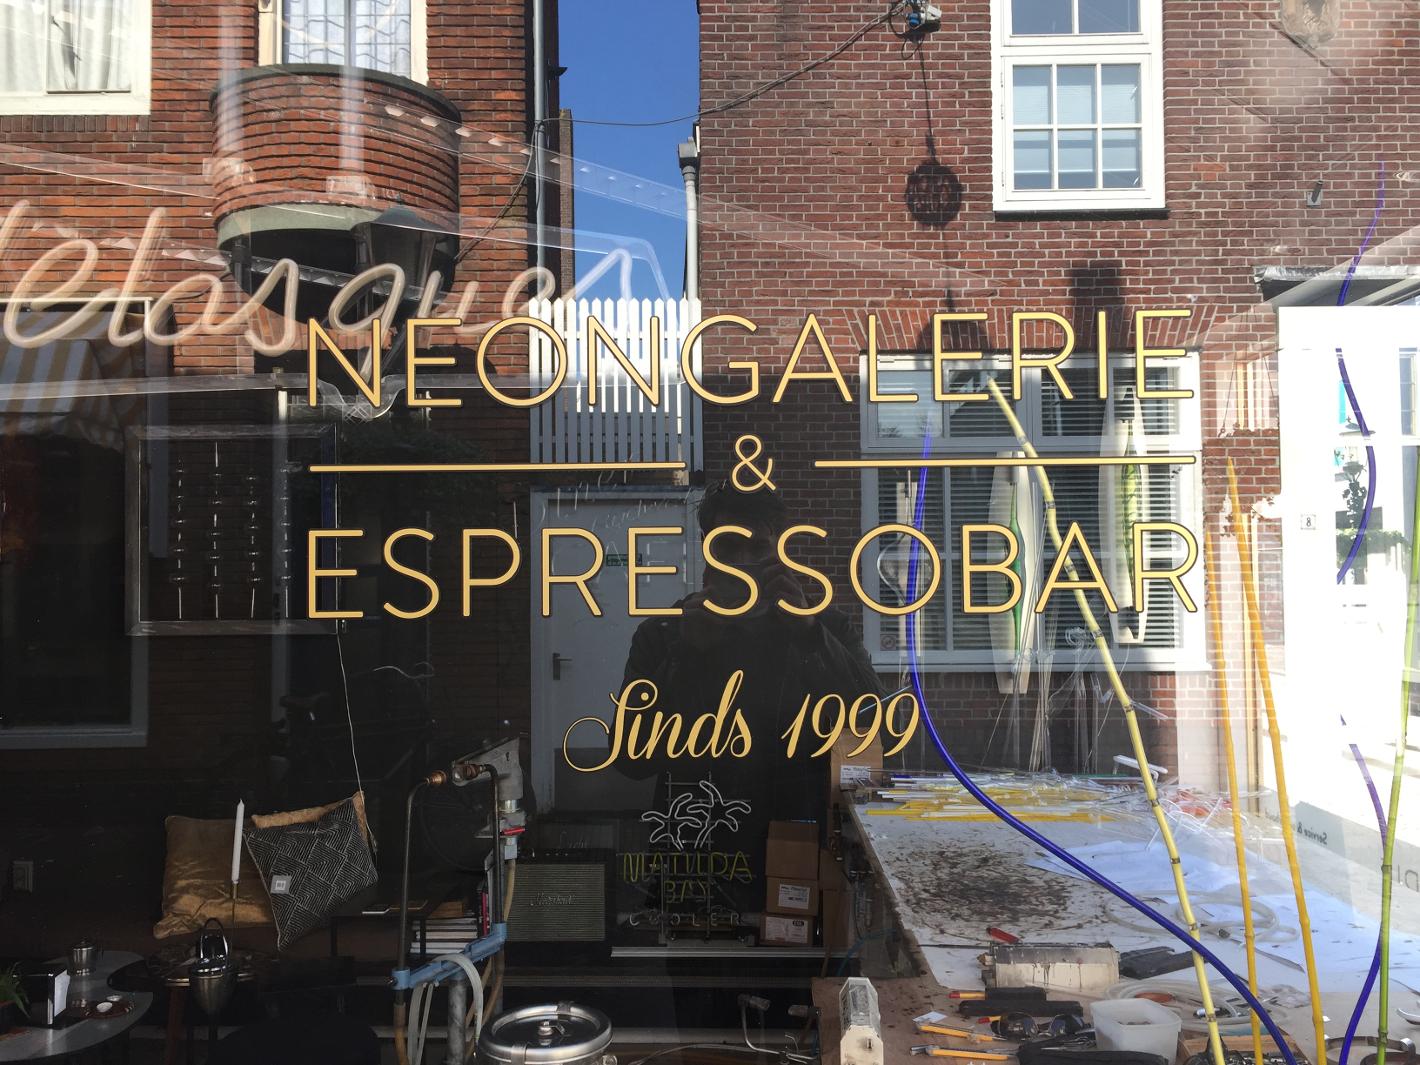 Foto Ray of Light Neongalerie & Espressobar in Alkmaar, Essen & Trinken, Kaffee, tee und kuchen, Sehenswürdigkeiten & wahrzeichen - #1